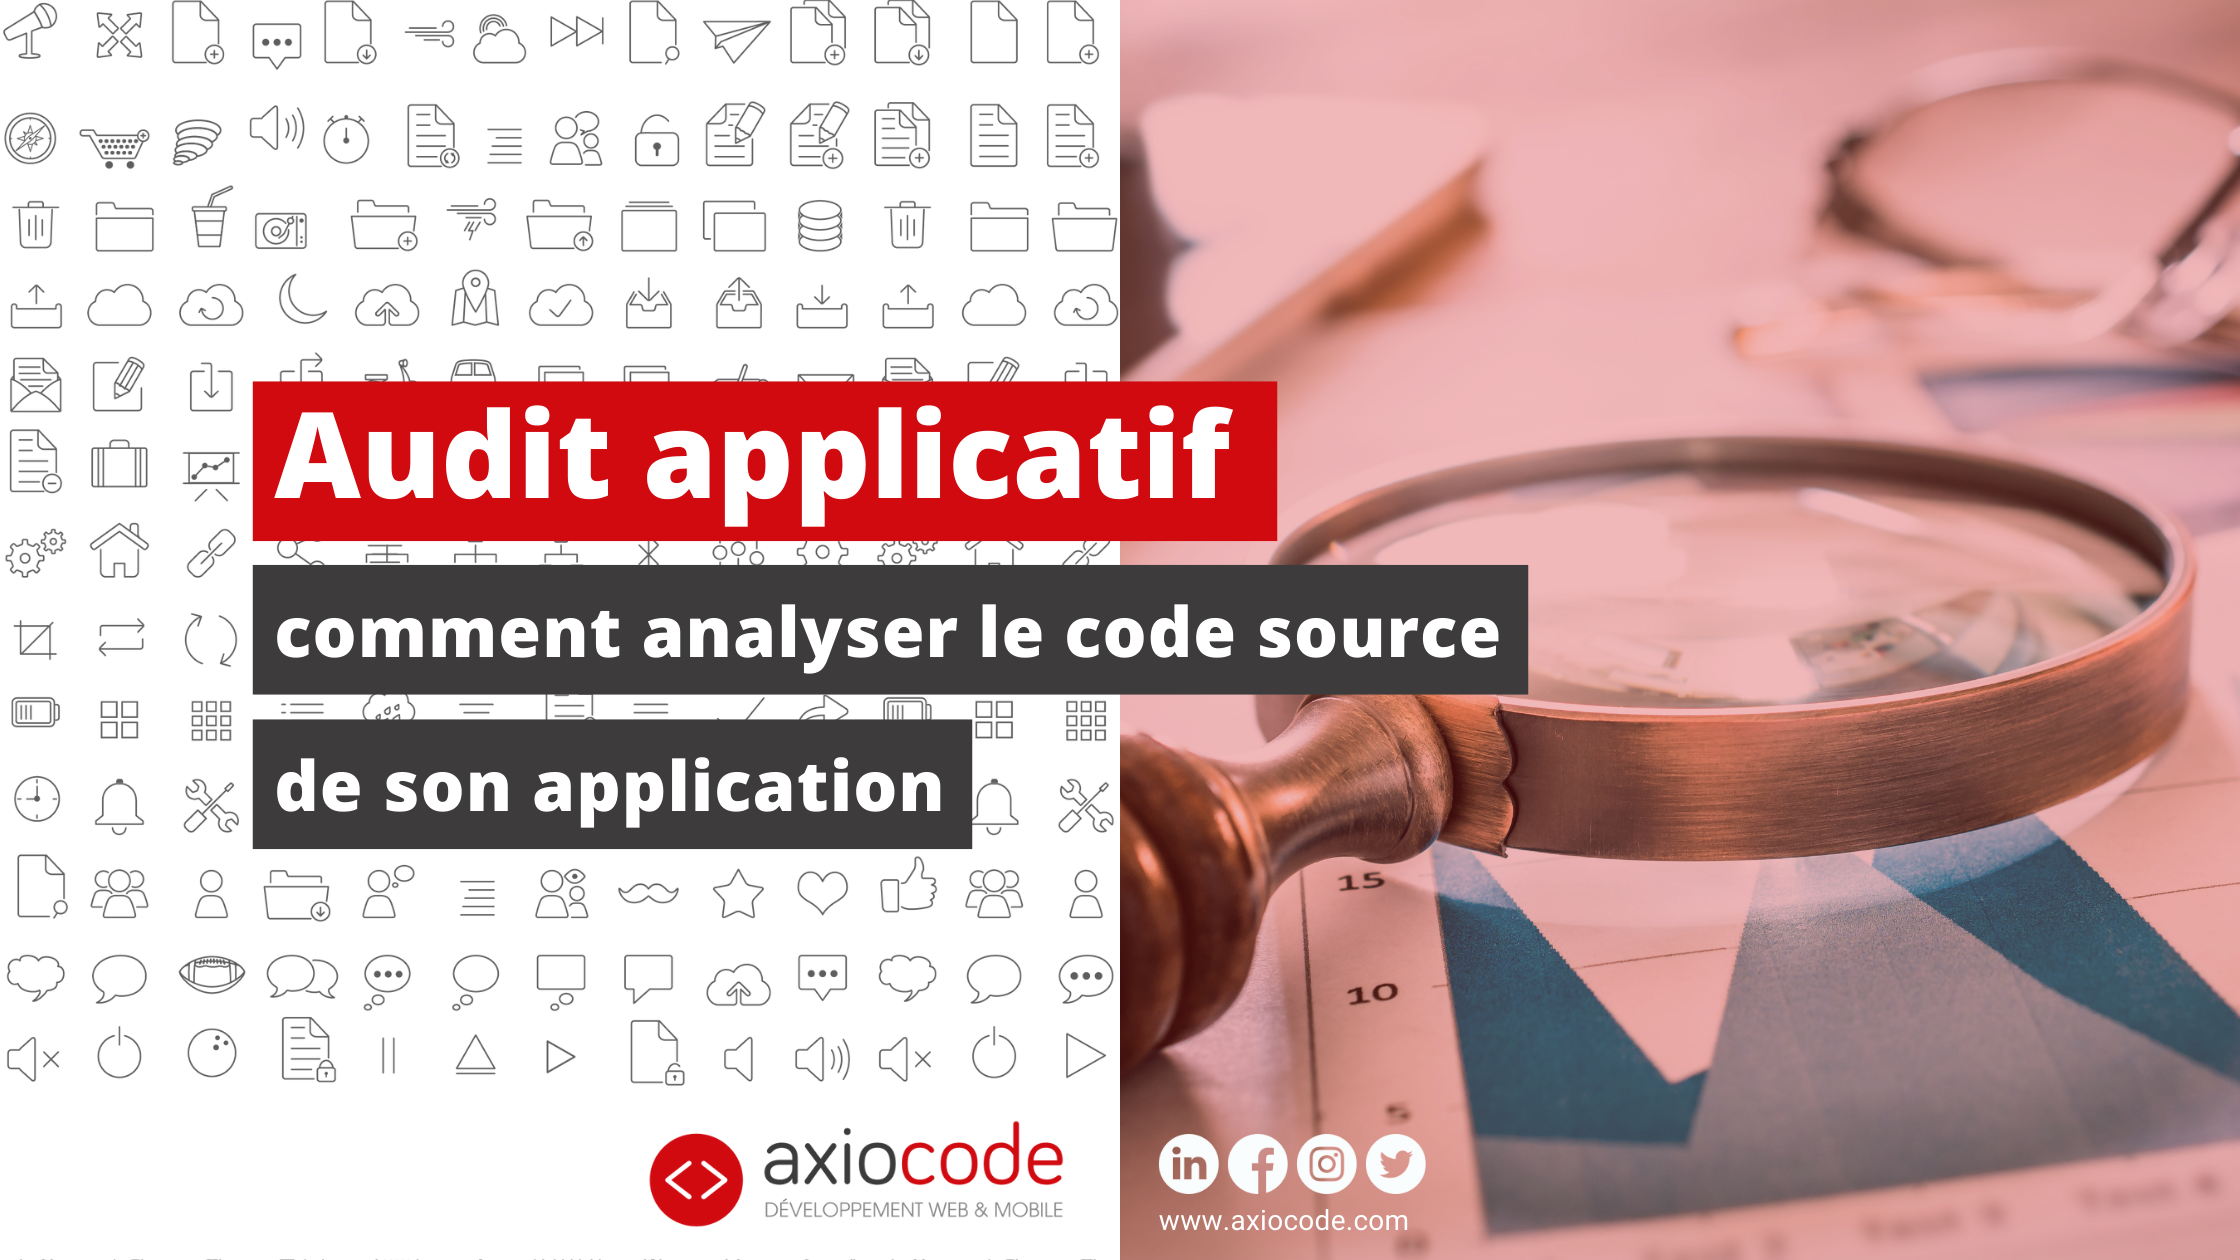 Analyser le code source permet de trouver d'éventuels bugs ou codes smells. C'est une étape indispensable de l'audit applicatif !